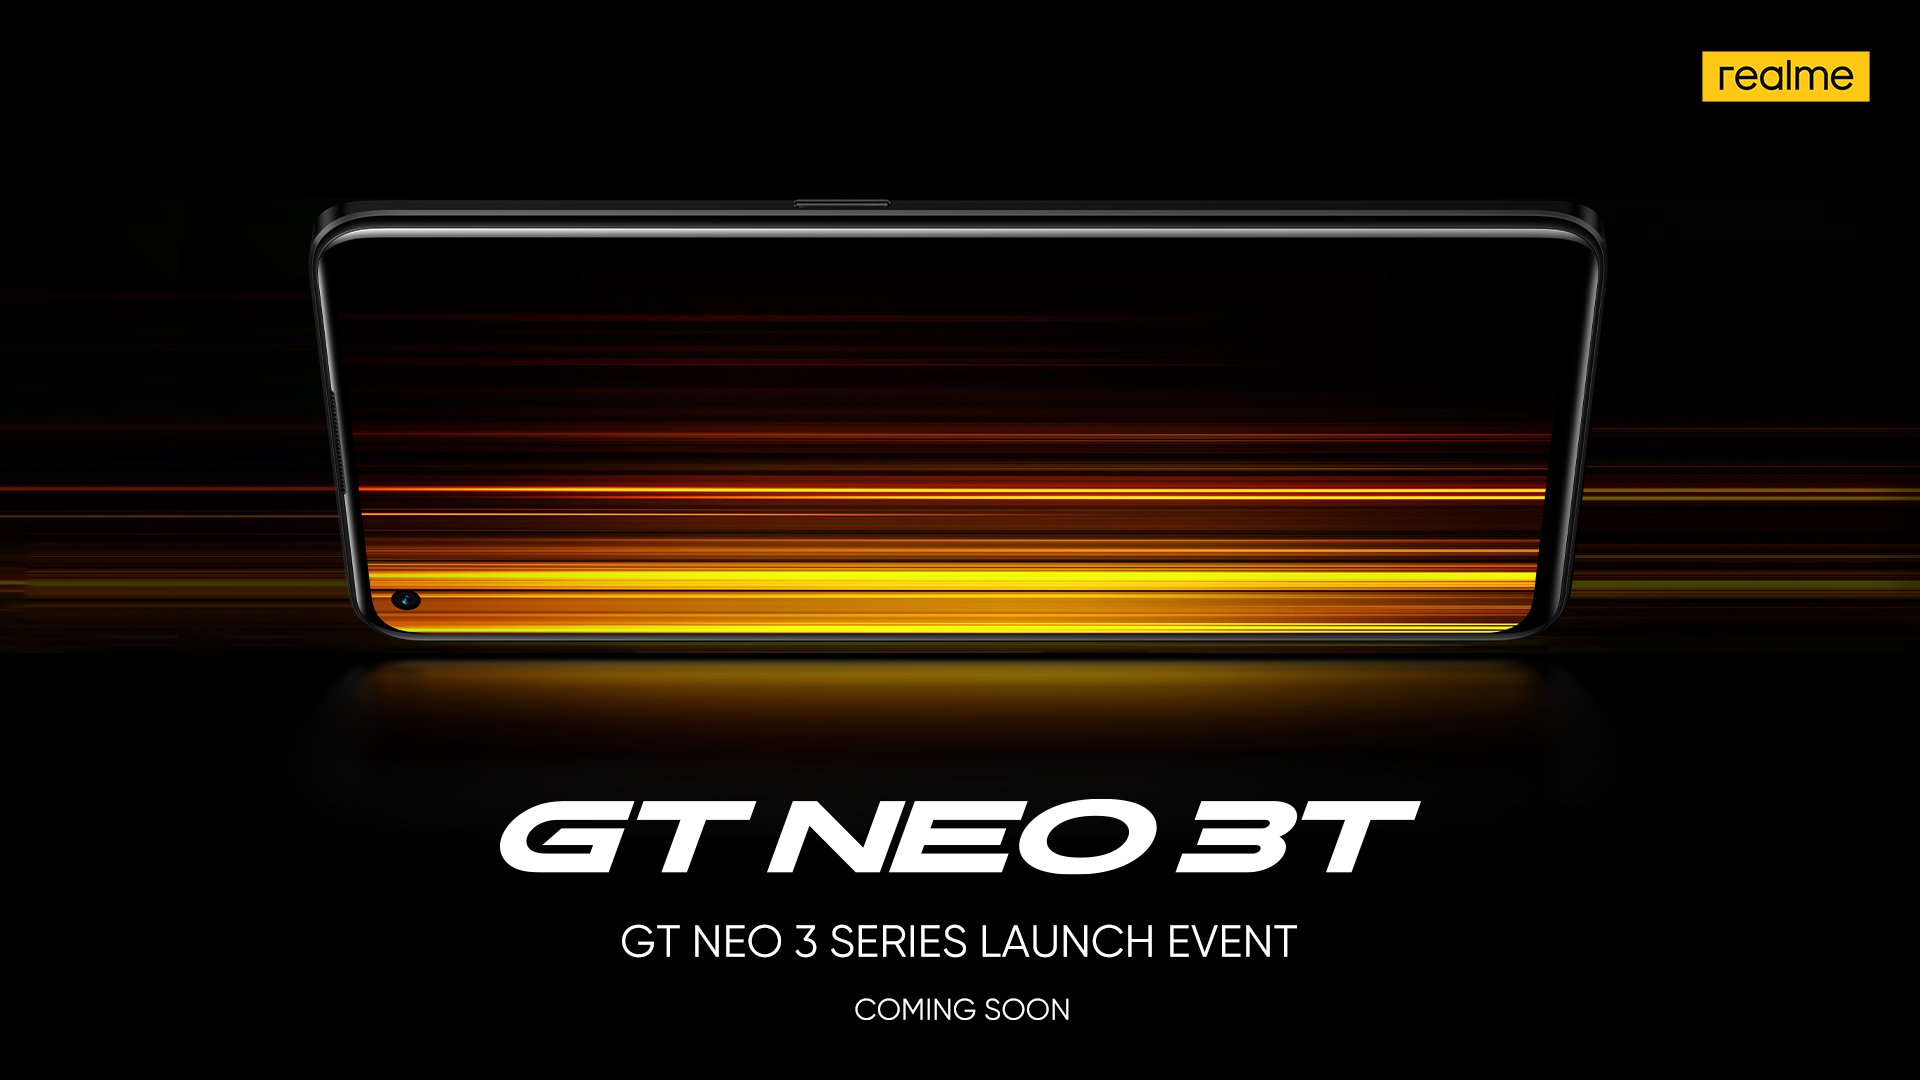 Realme ยืนยัน Realme GT Neo 3T จะเปิดตัวในเร็วๆ นี้